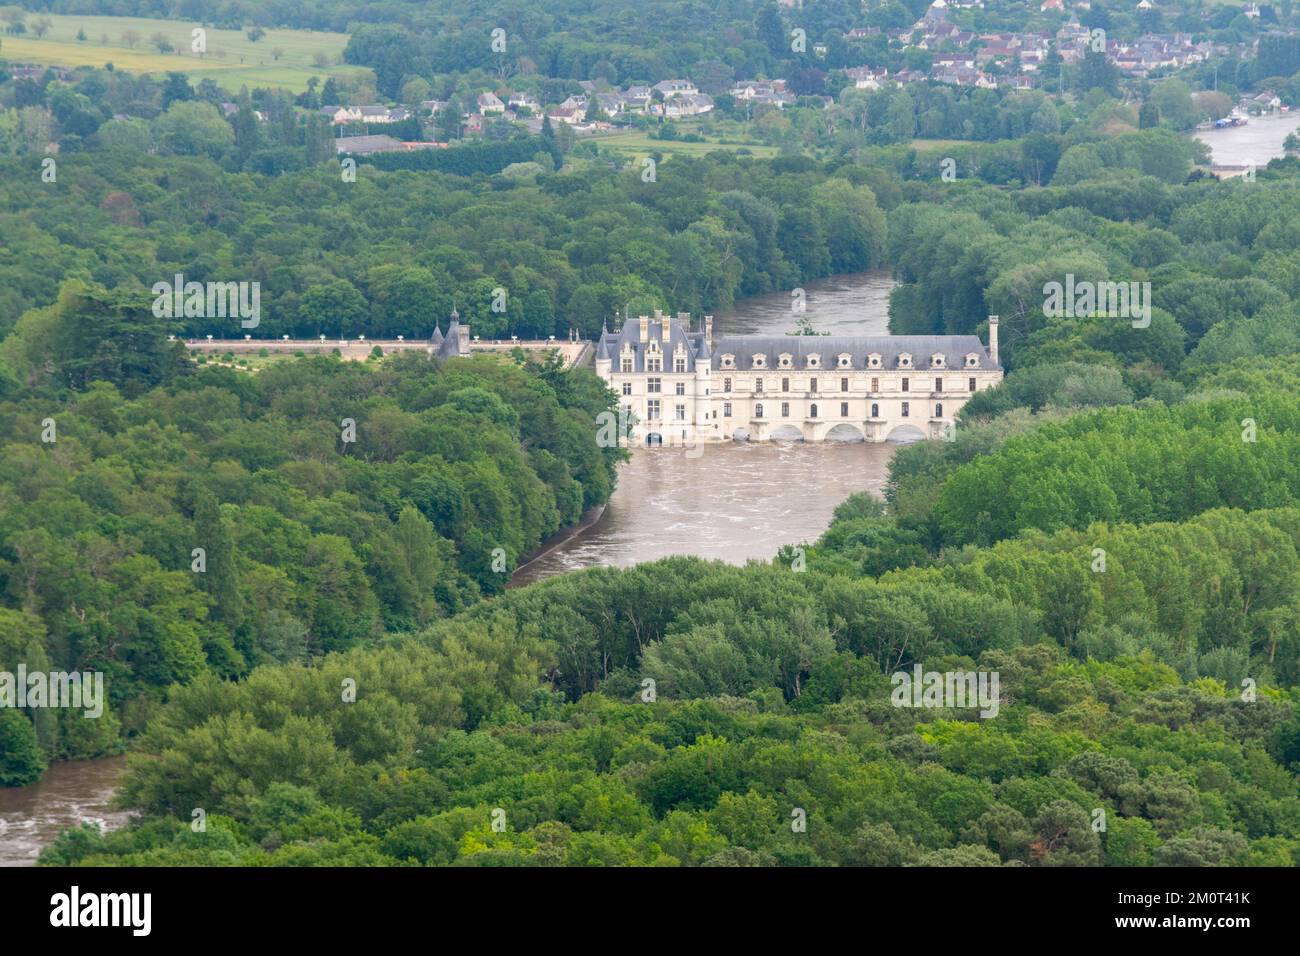 France, Indre-et-Loire (37), dans la vallée du cher, le château de Chenonceau subit l'inondation de dix ans de juin 2016, ses jardins sont partiellement inondés. Banque D'Images